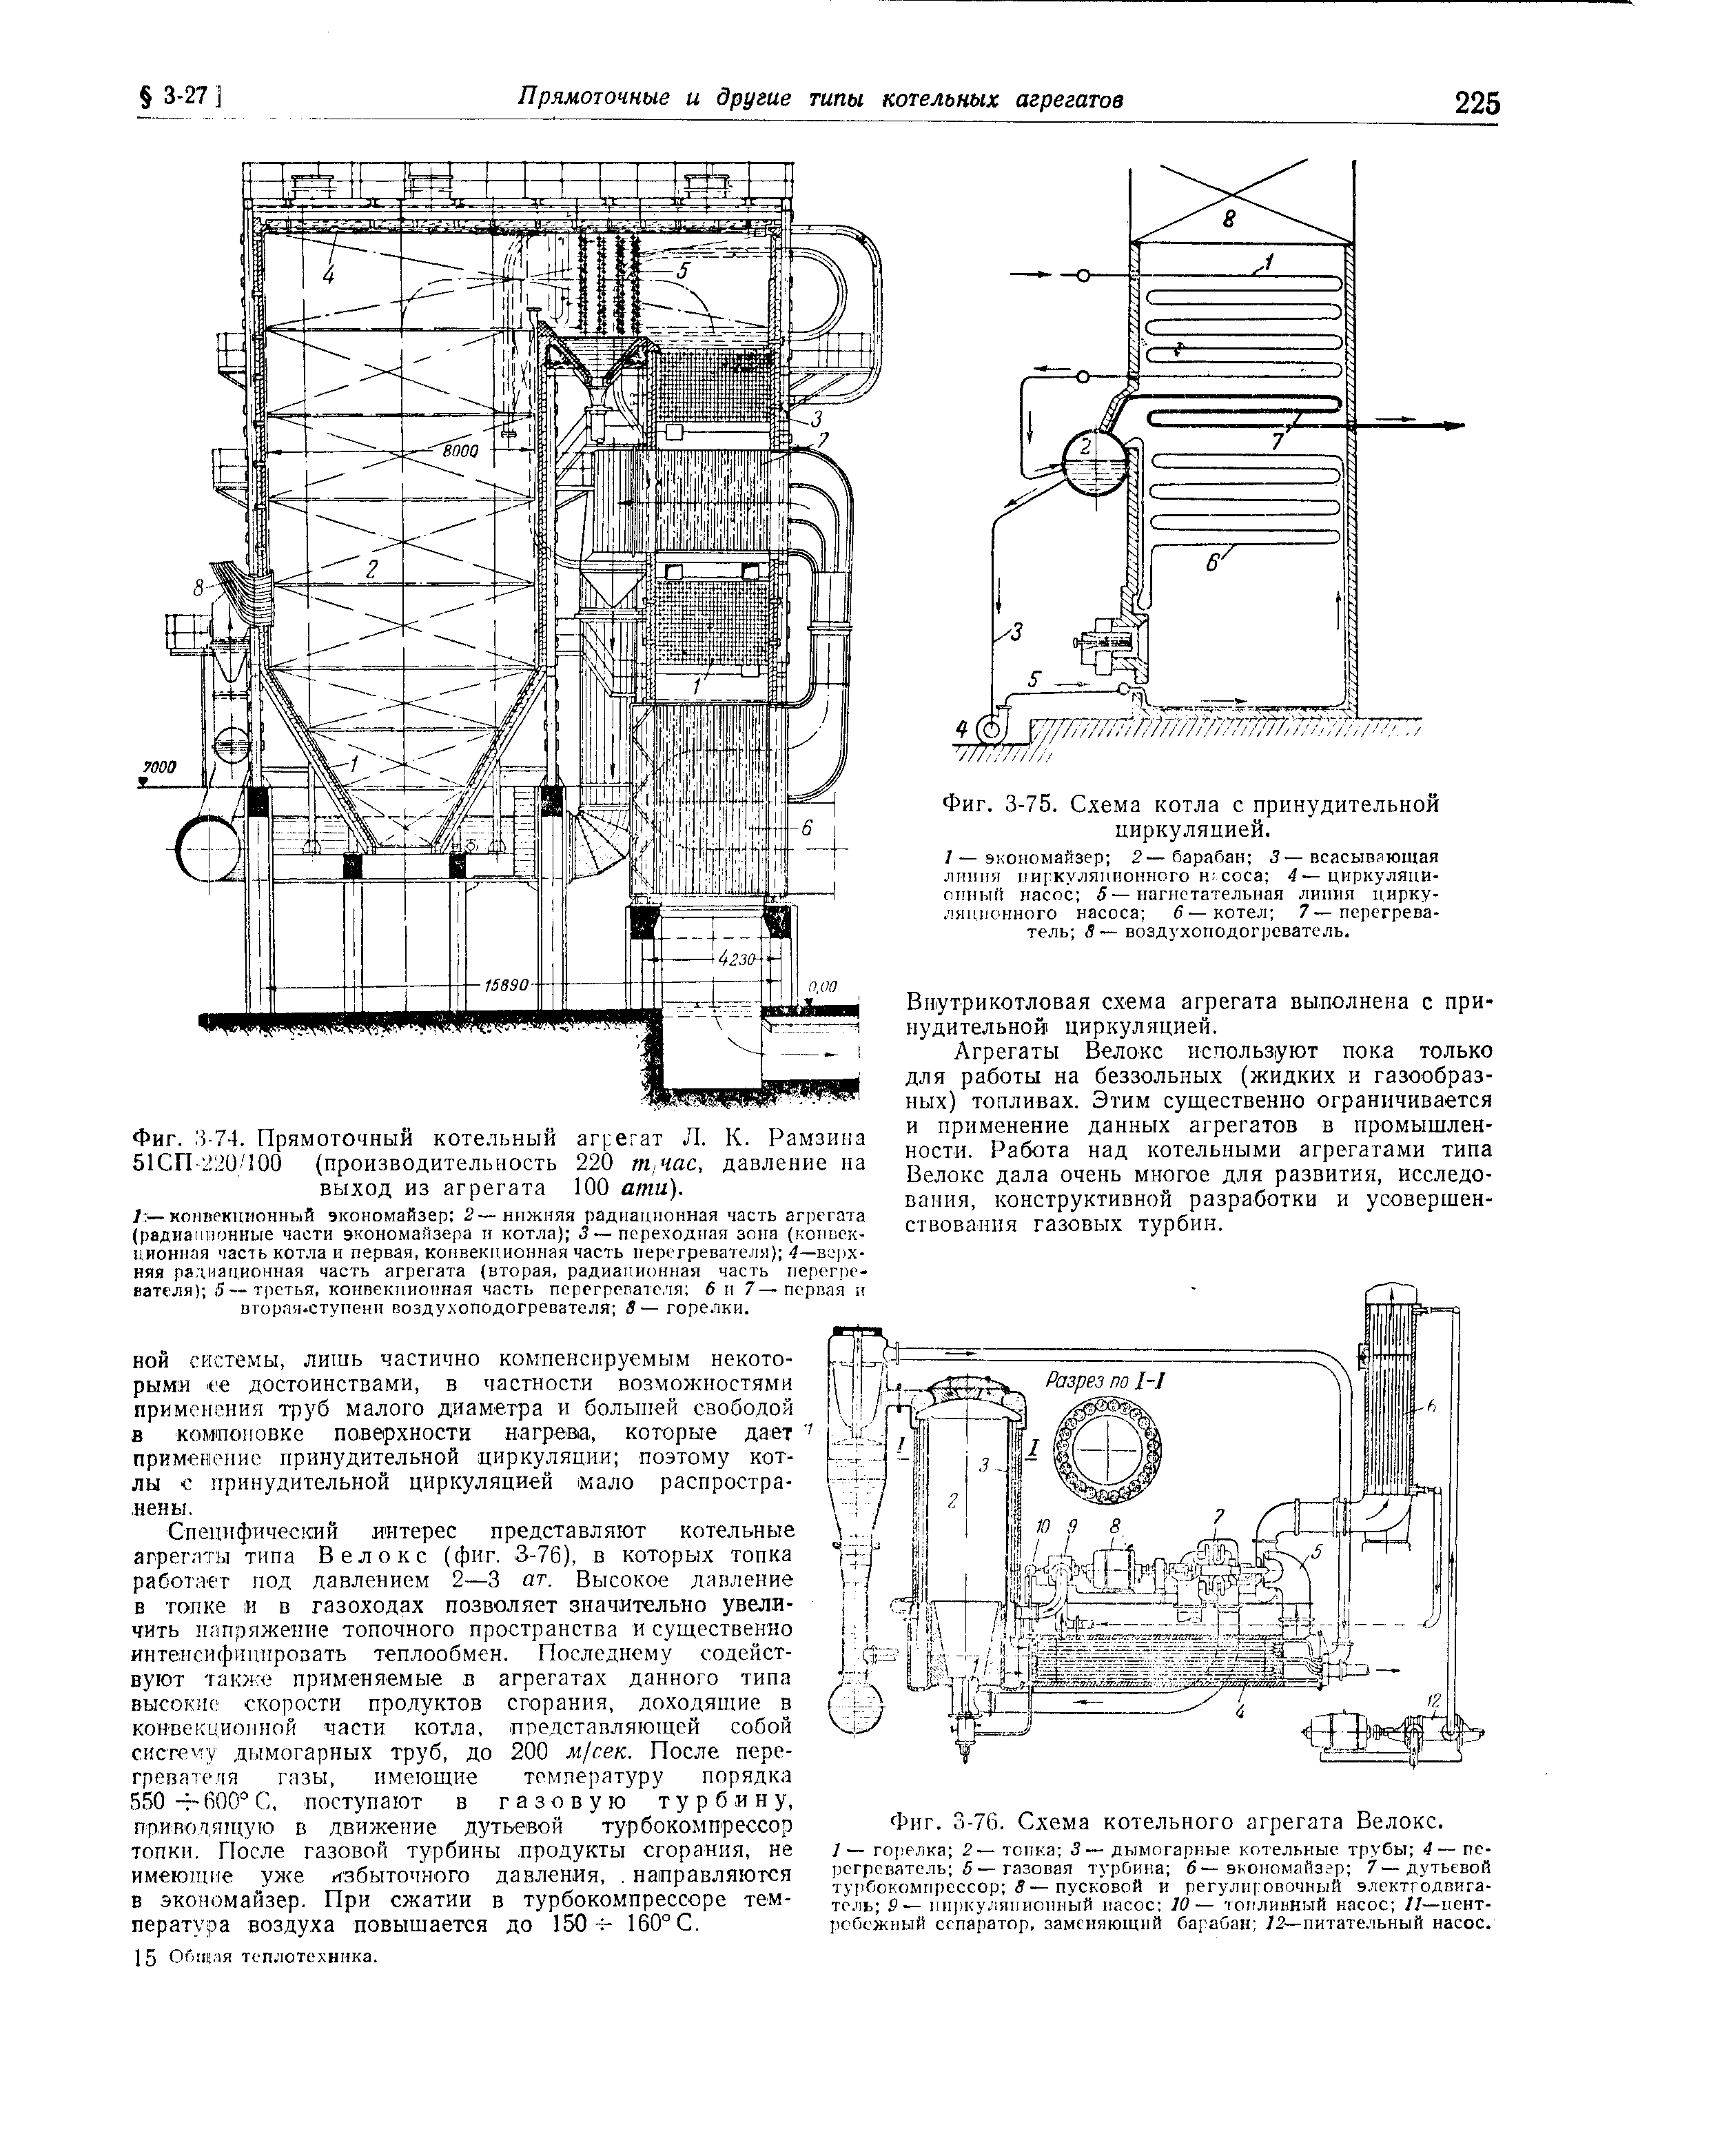 Фиг. 3-76. Схема котельного агрегата Велокс.
